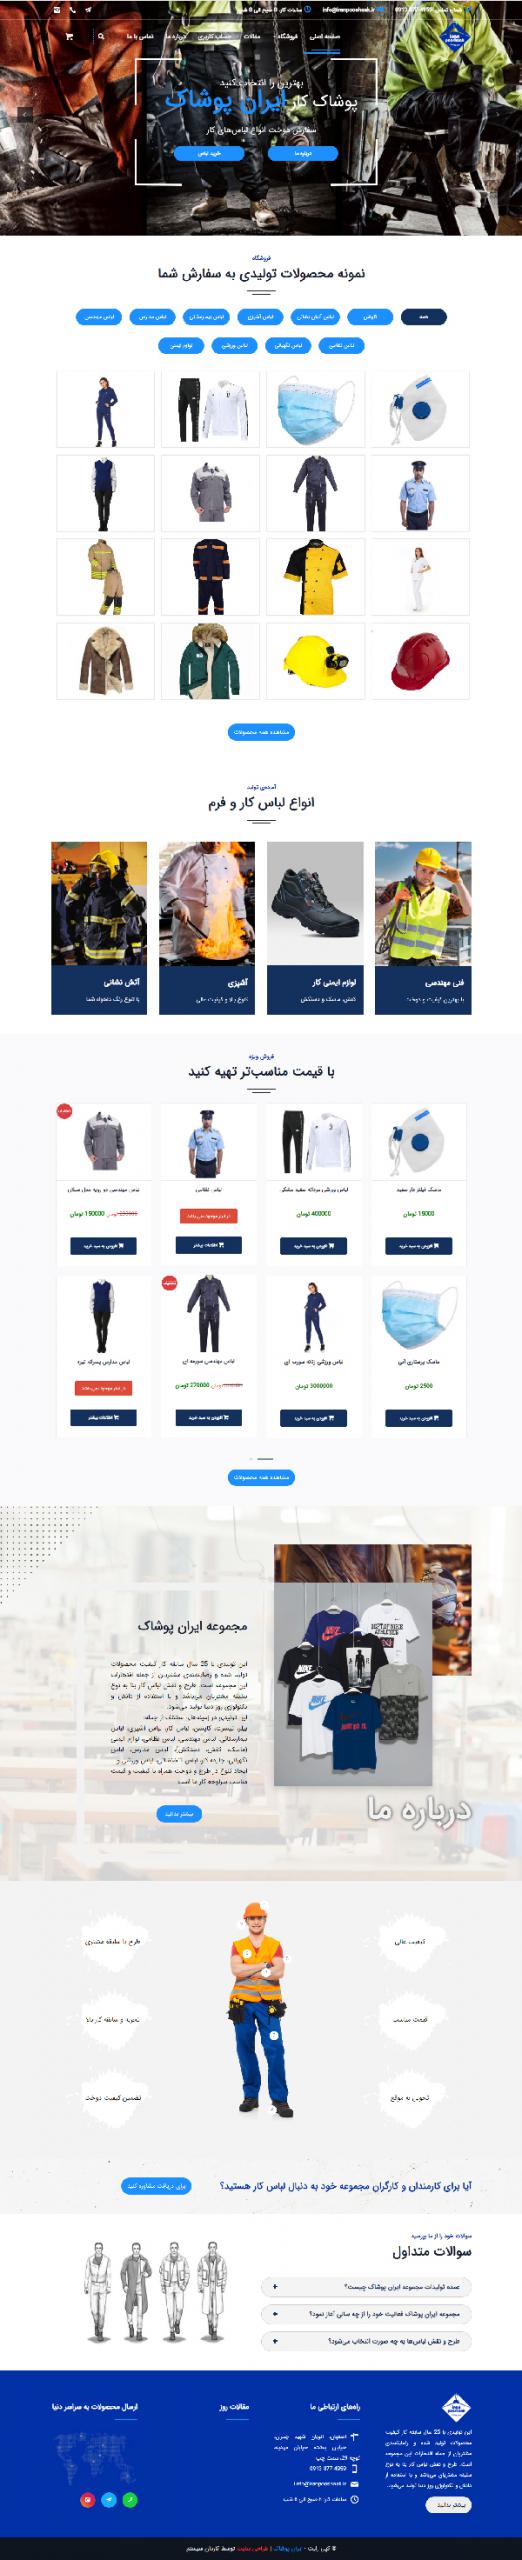 طراحی سایت ایران پوشاک | تولید و فروش انواع لباس کار